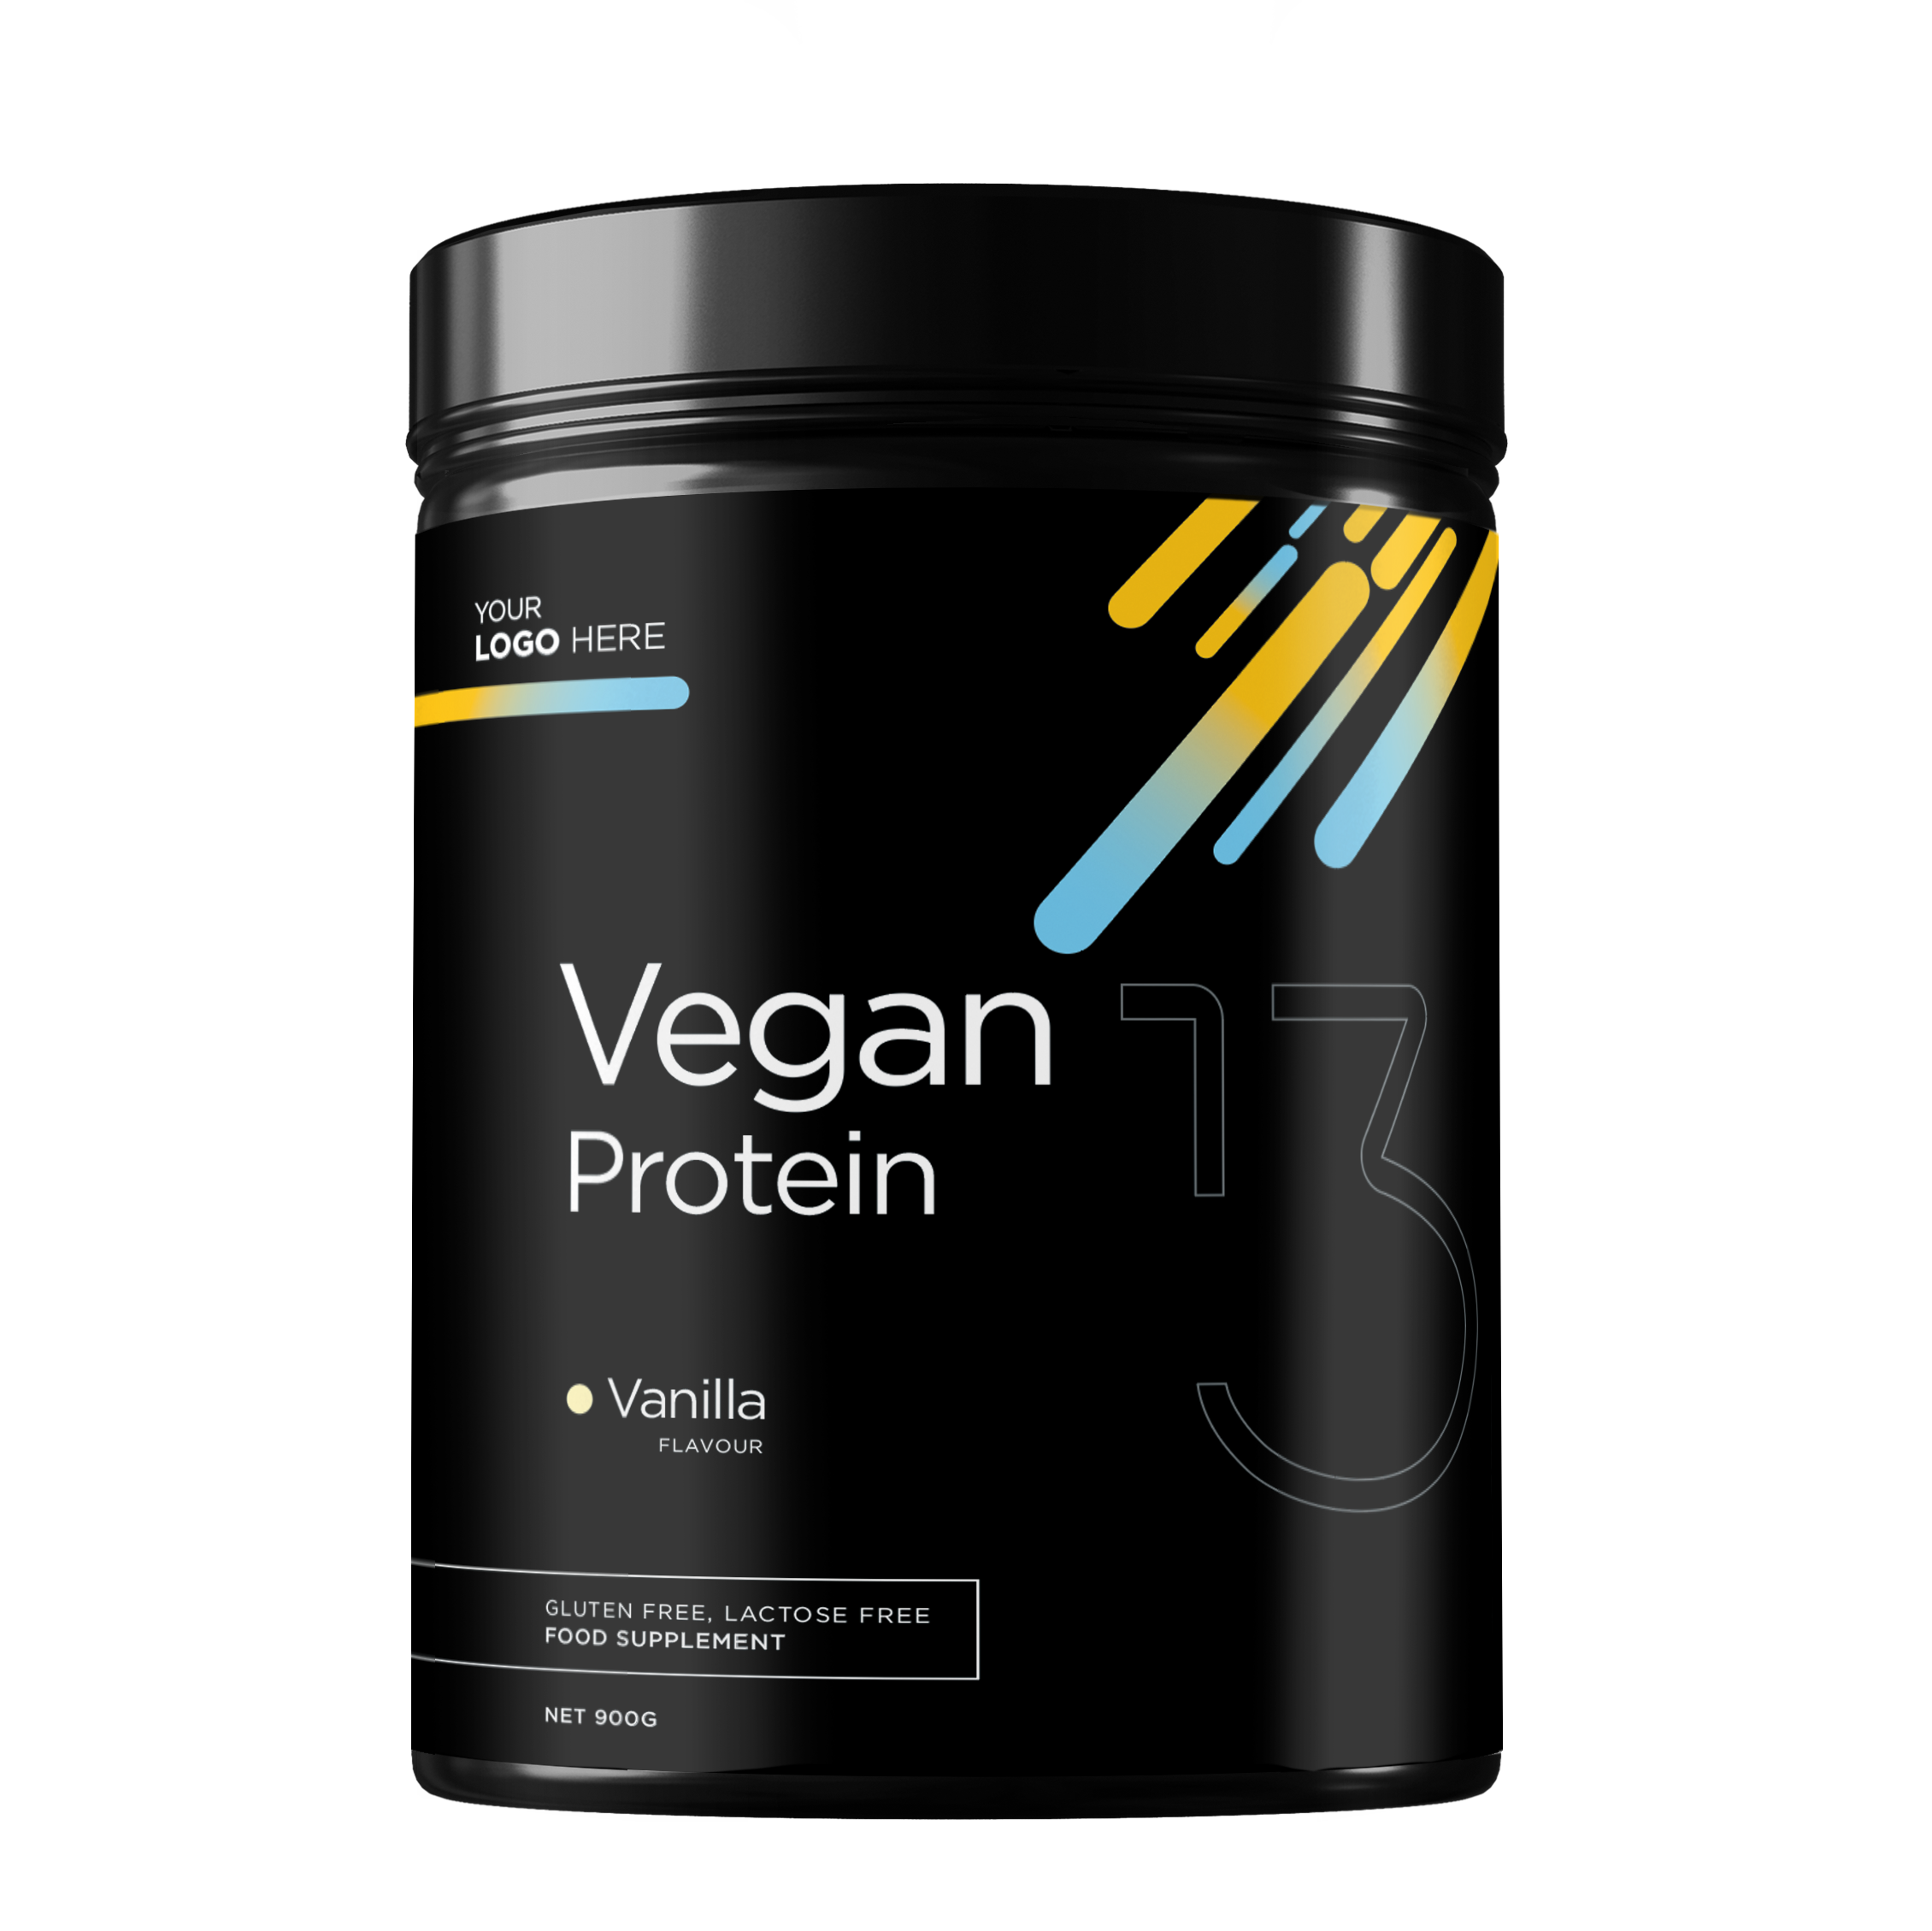 13pi_veganprotein_mockup